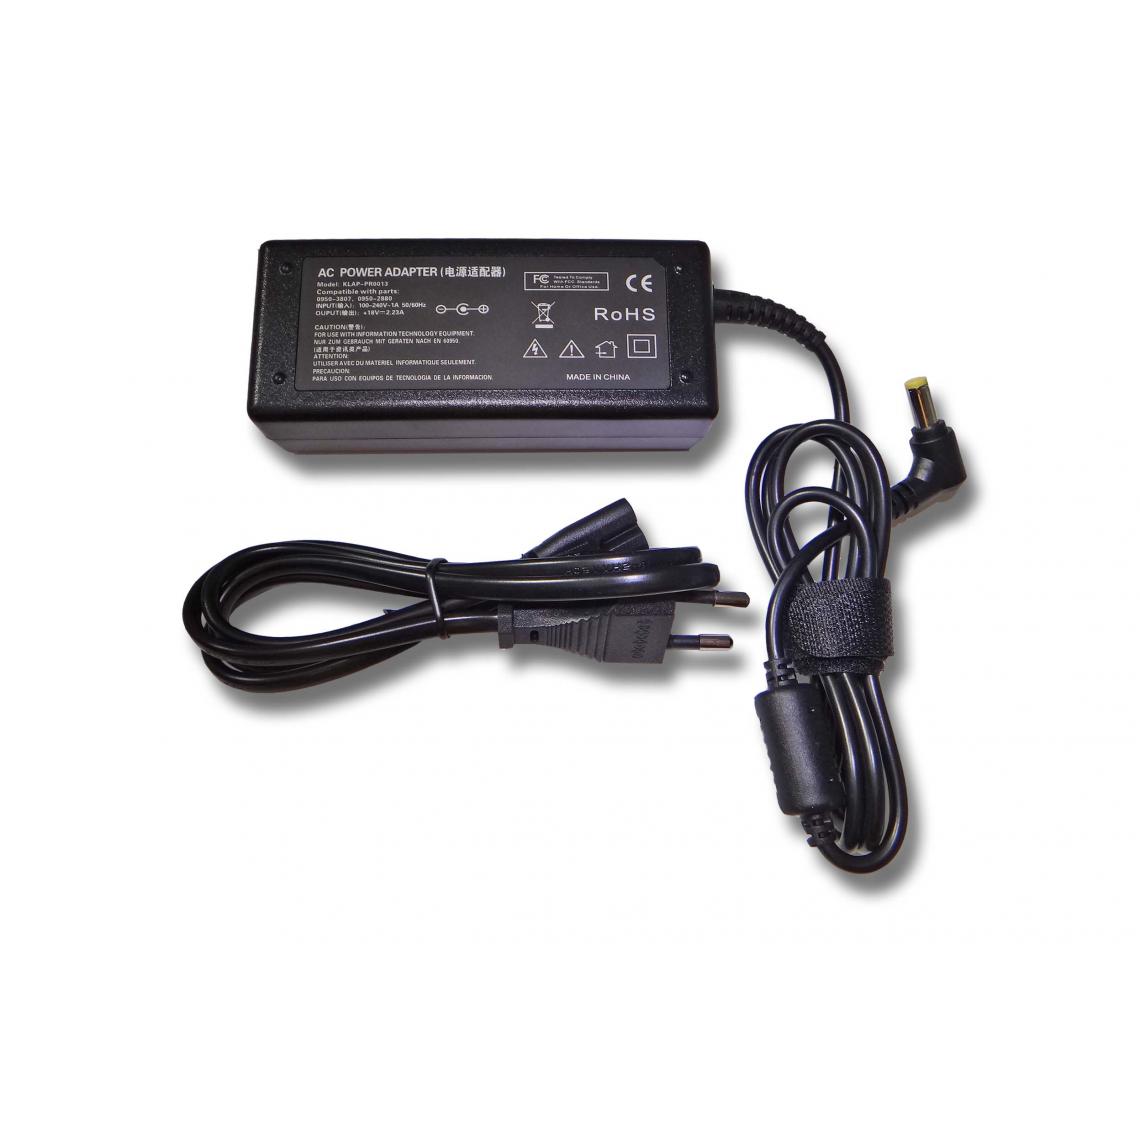 Vhbw - vhbw Imprimante Adaptateur bloc d'alimentation Câble d'alimentation Chargeur compatible avec HP PSC 500, 750, 950, 920 imprimante - 2.23A - Accessoires alimentation